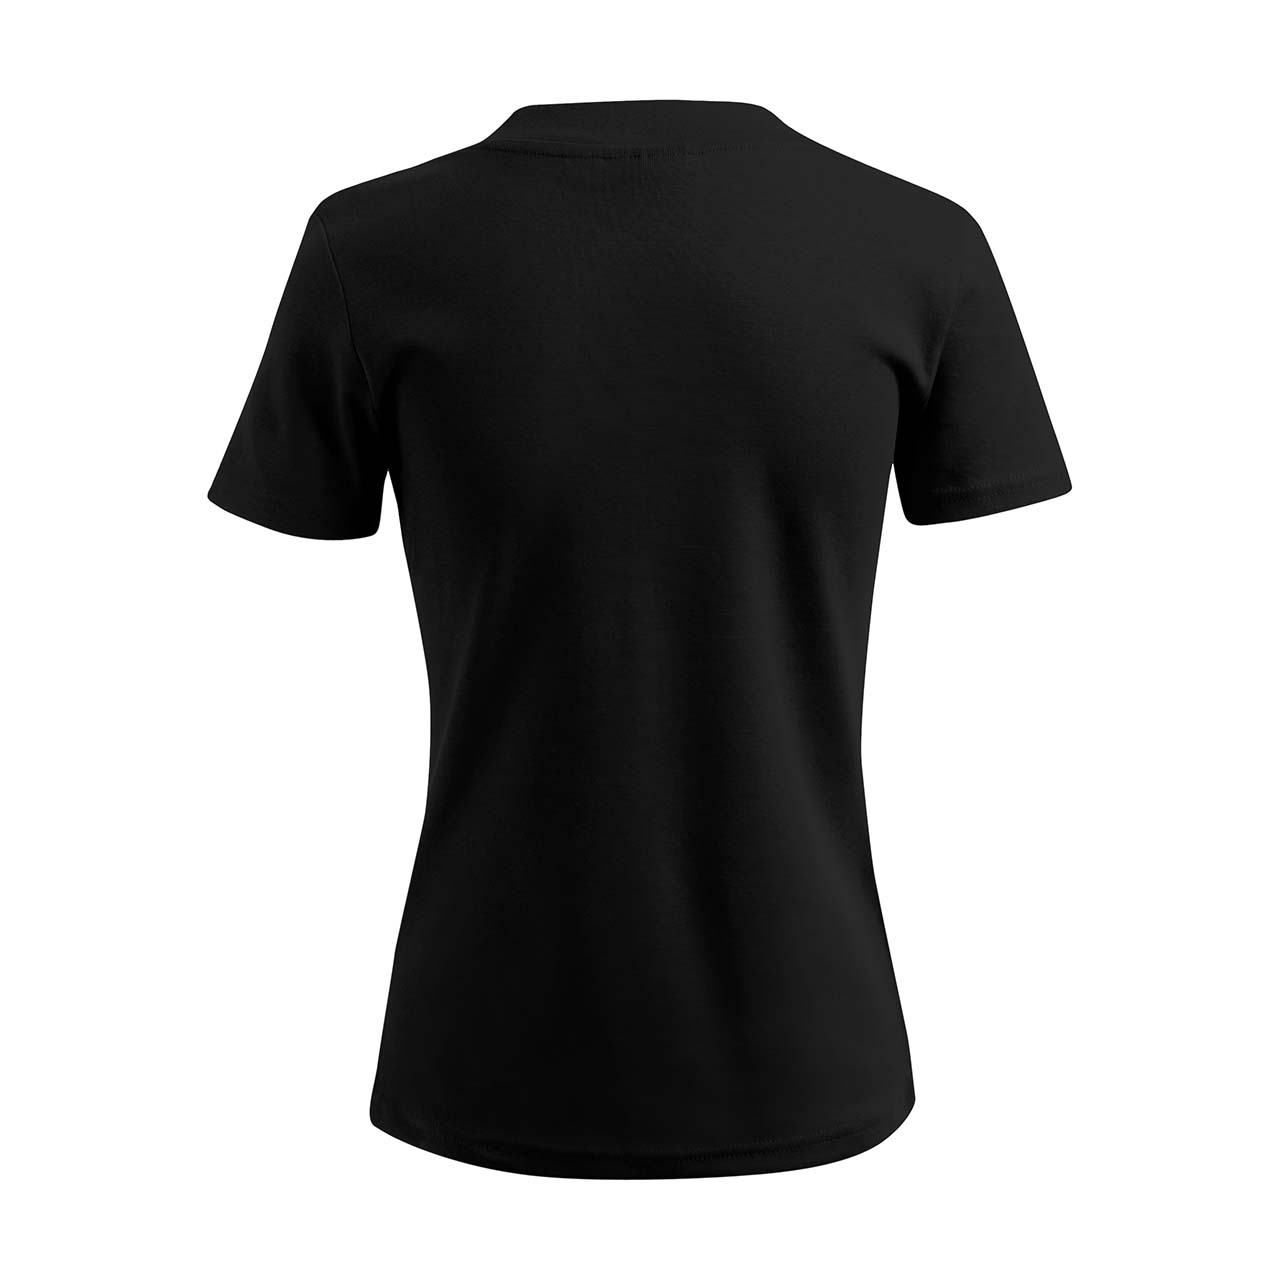 Damen T-Shirt mit V-Ausschnitt - Mädche us Kölle - Strass